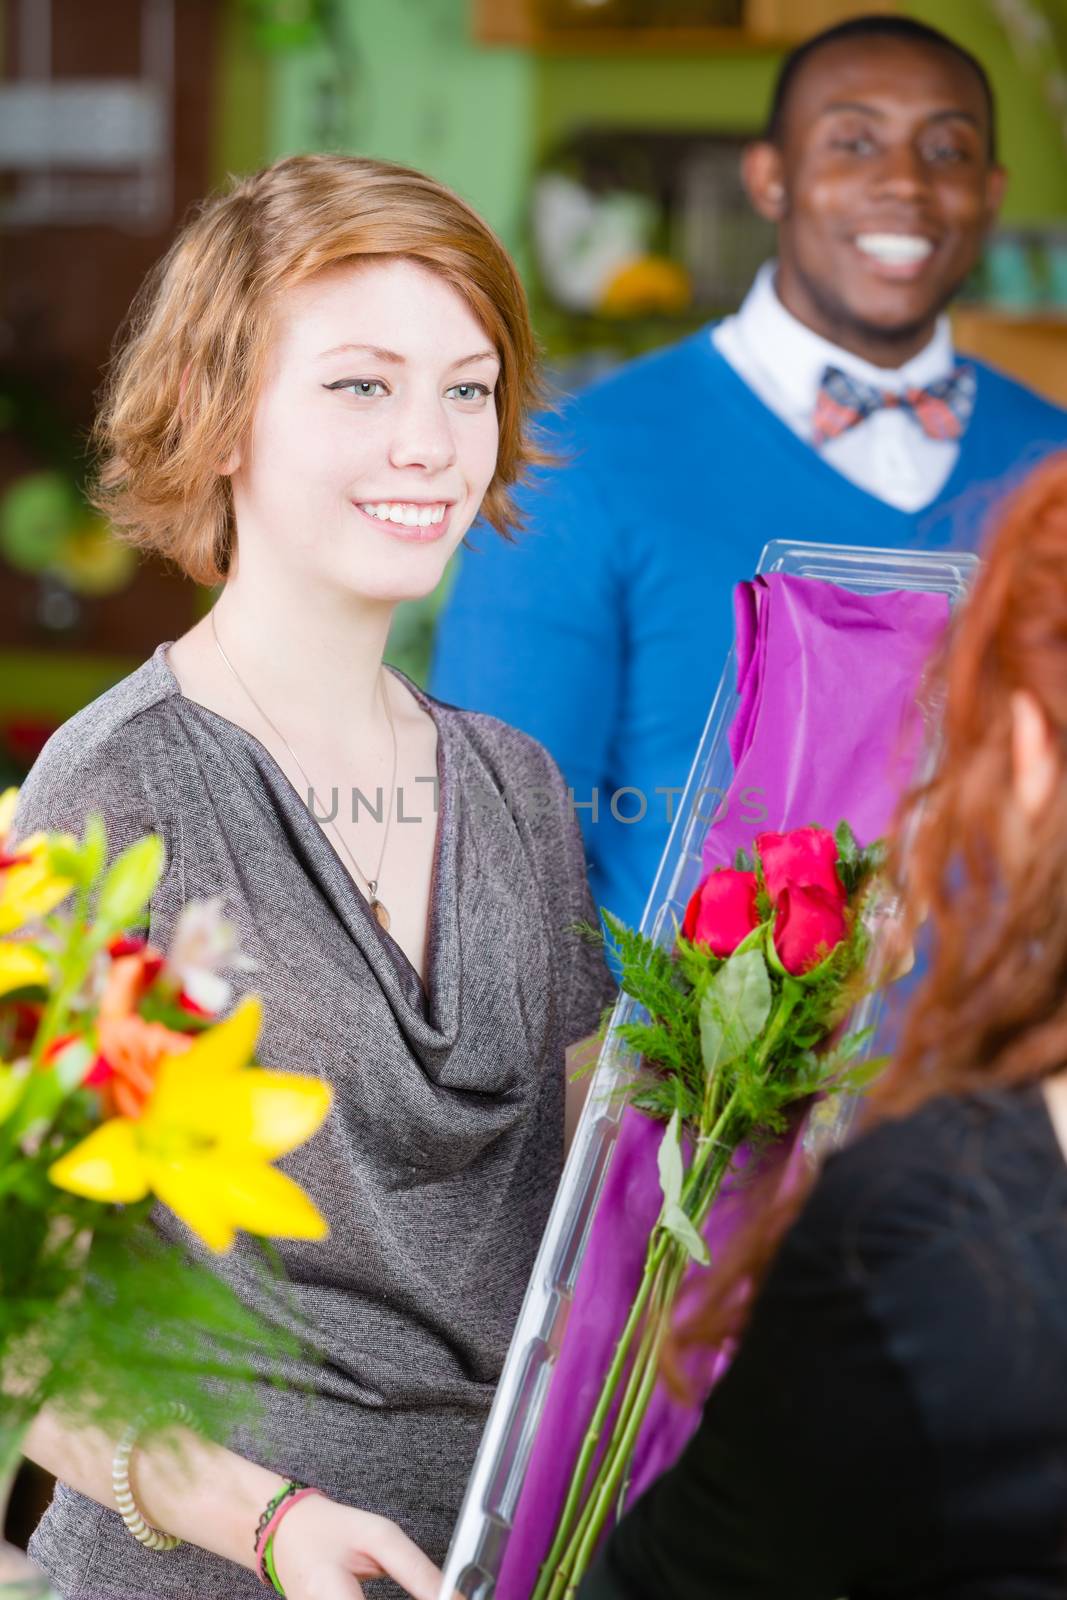 Teen Girl in Flower Shop Buys Roses by Creatista